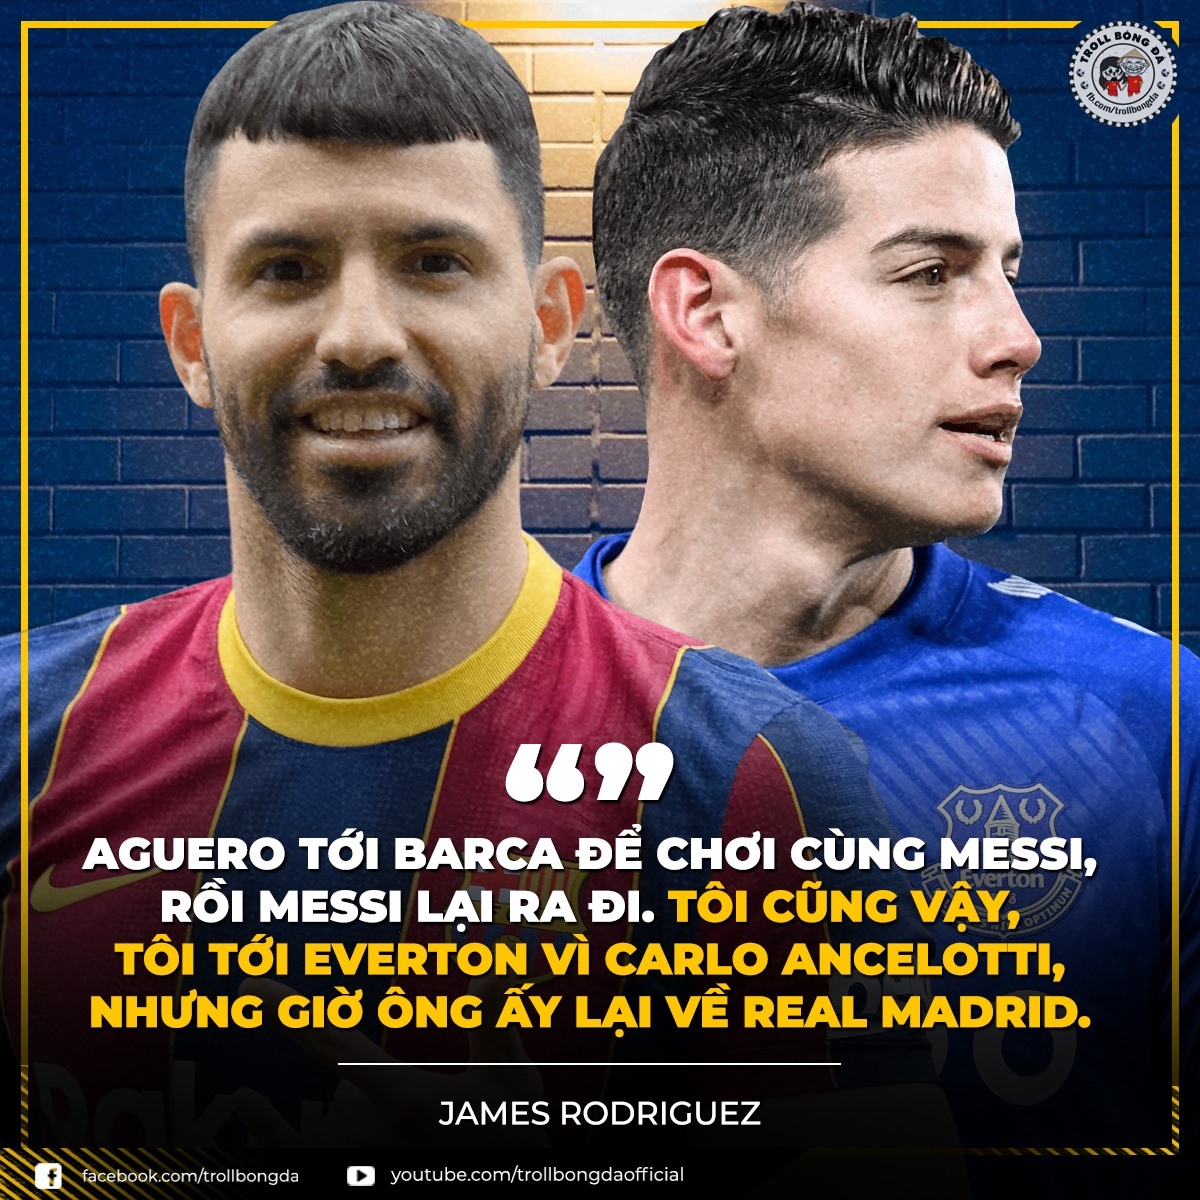 Biếm họa 24h: Ramos và Messi hóa thù thành bạn - Ảnh 1.